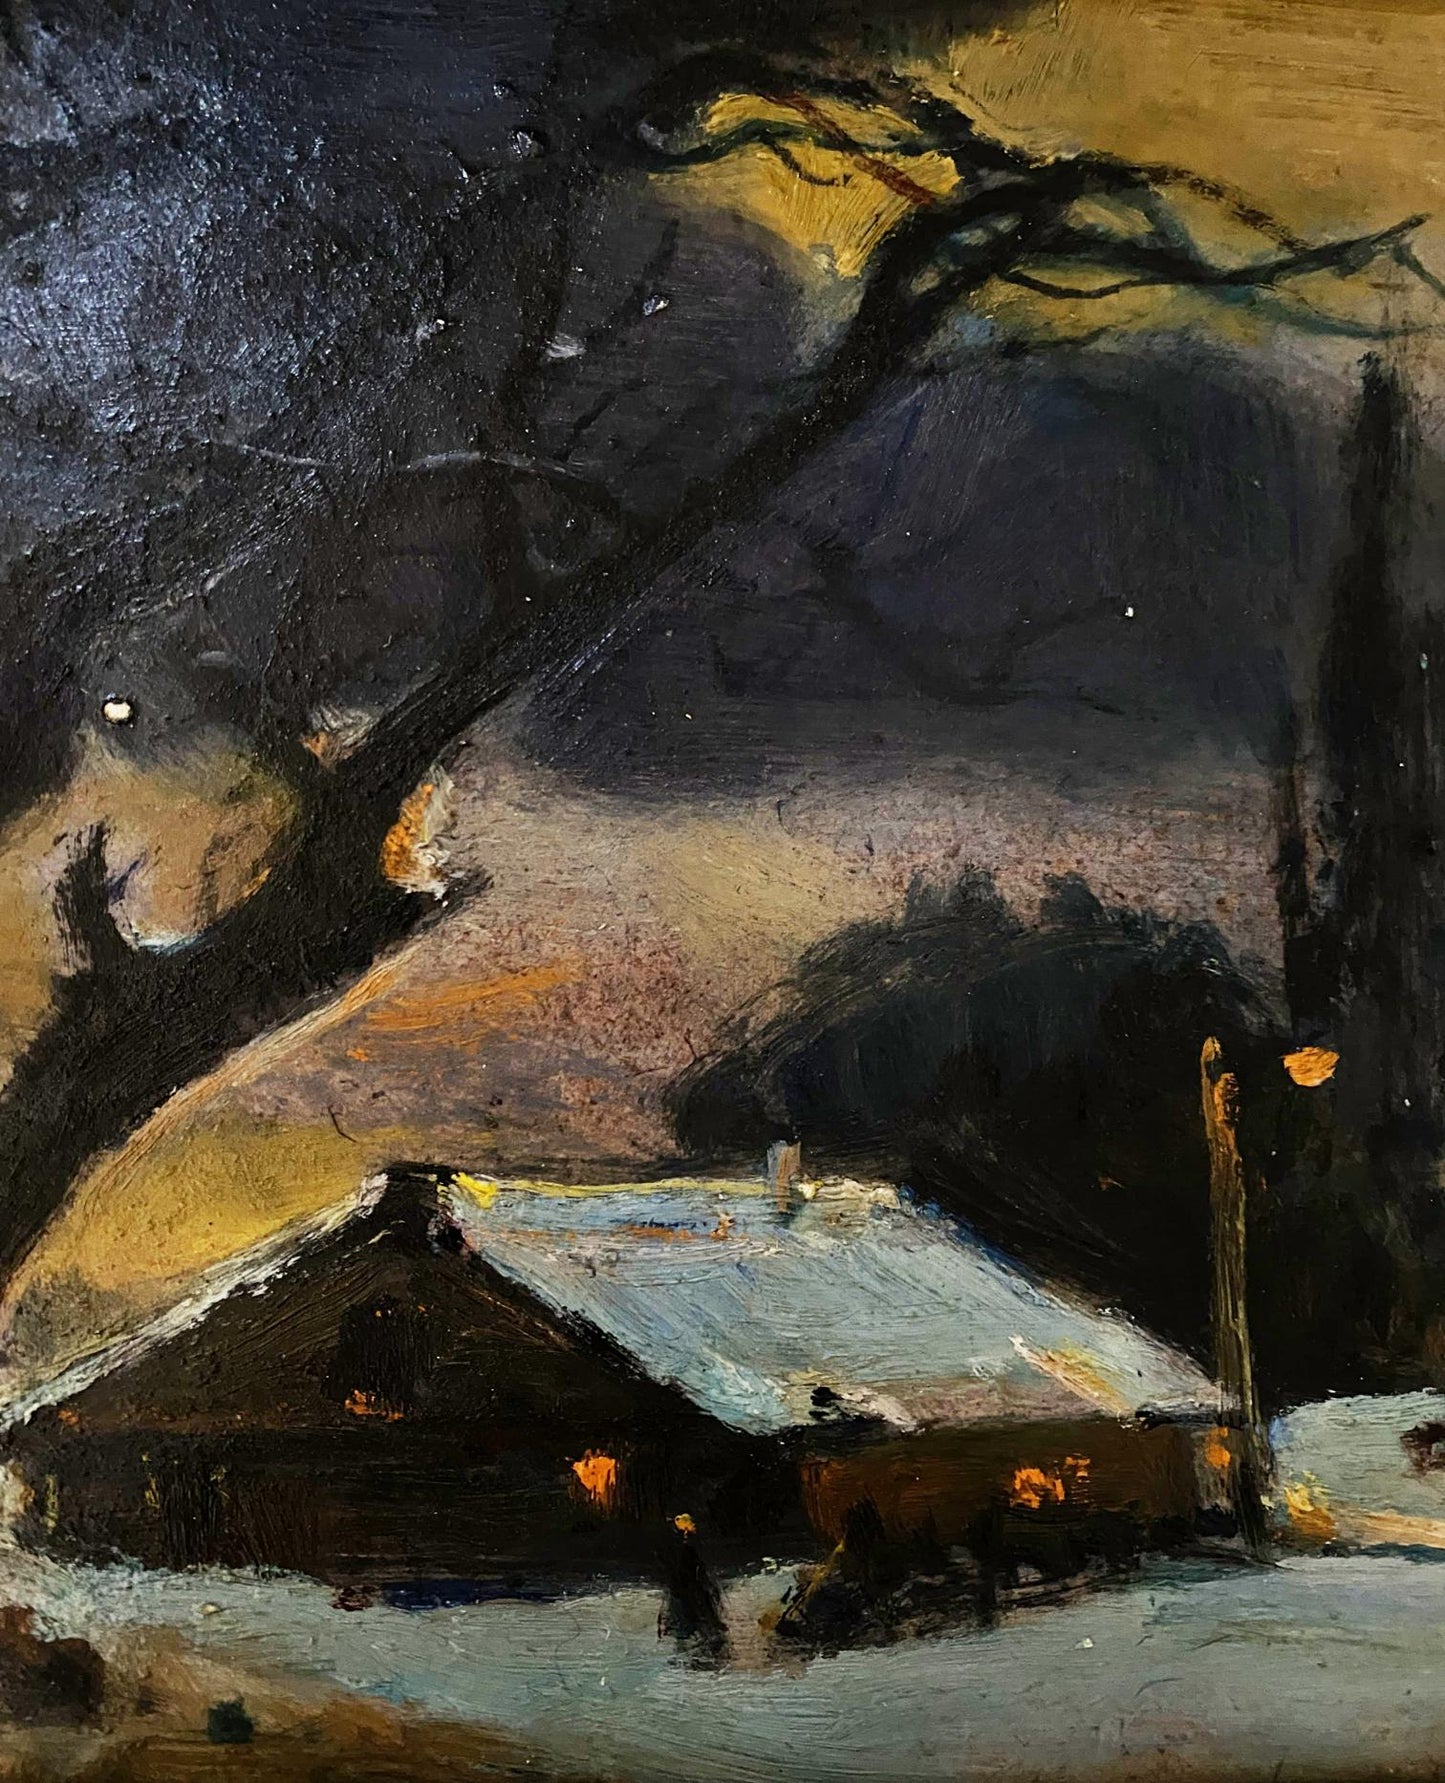 Oil painting Winter evening Litvinov Oleg Arkad'yevich